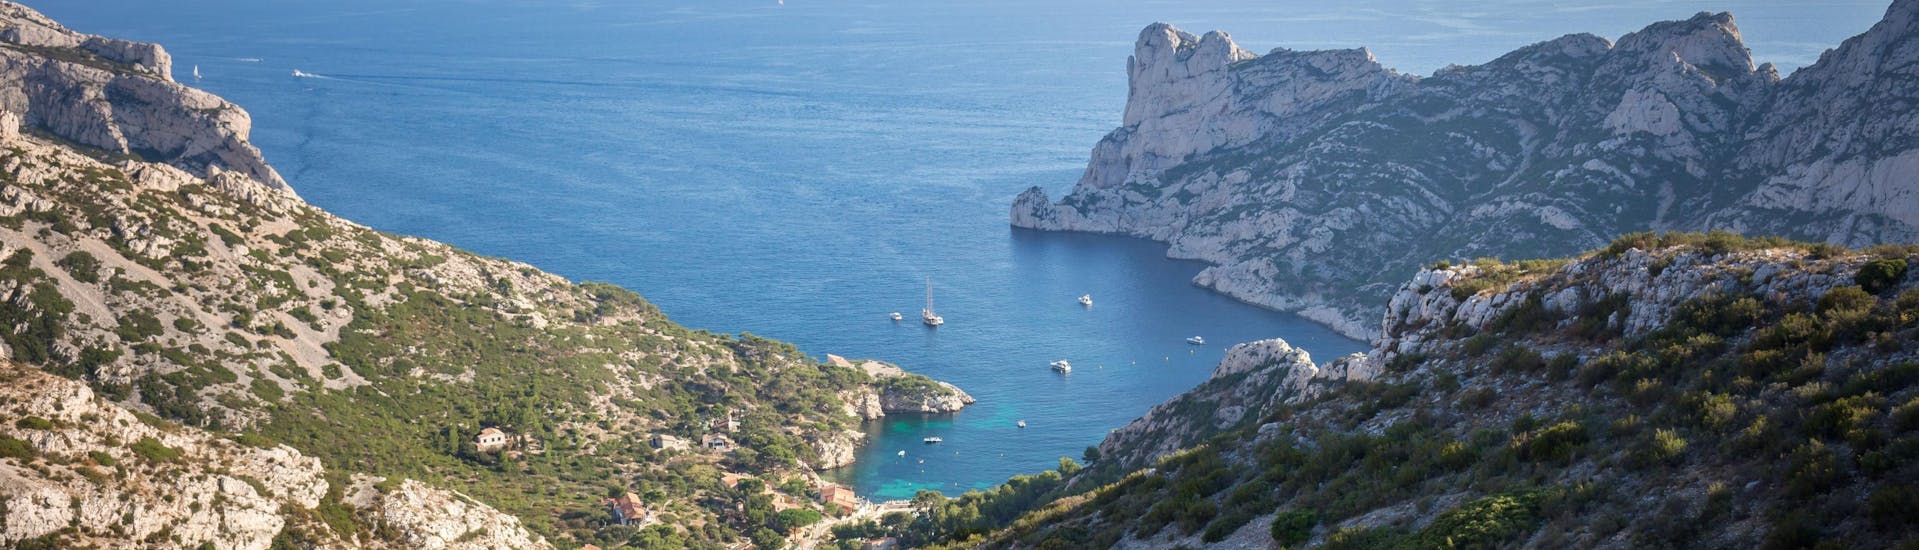 Vista sobre la calanque de Sormiou con barcos navegando en el hermoso mar turquesa del Mediterráneo. Marsella, Cassis.